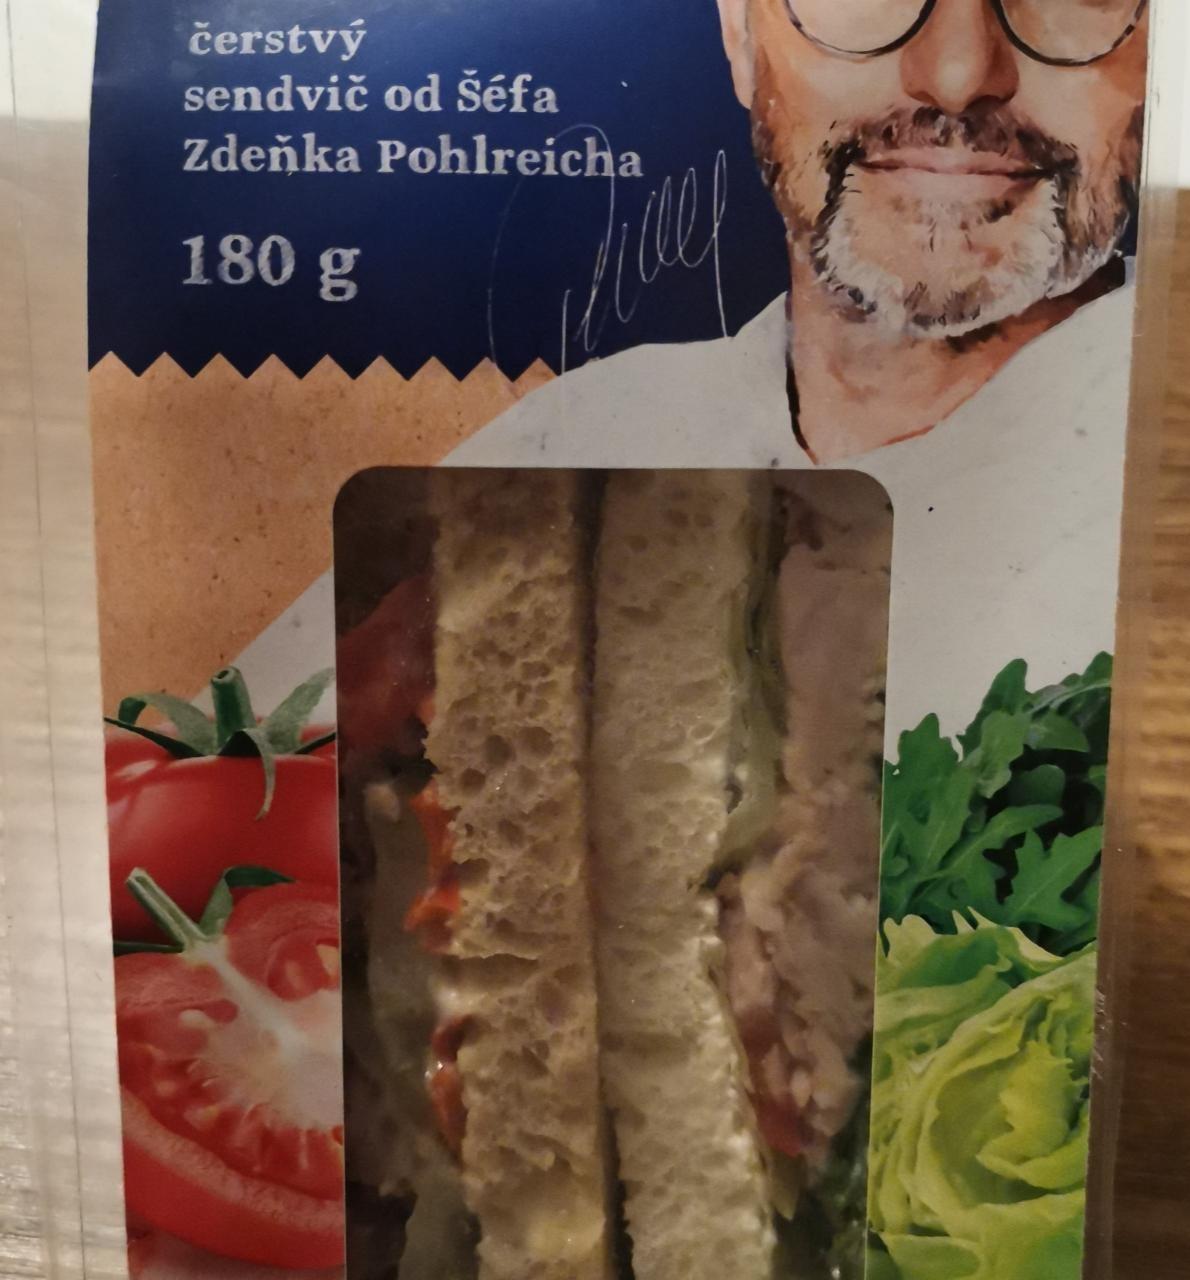 Fotografie - Krůtí maso čerstvý sendvič od Šéfa Zdeňka Pohlreicha